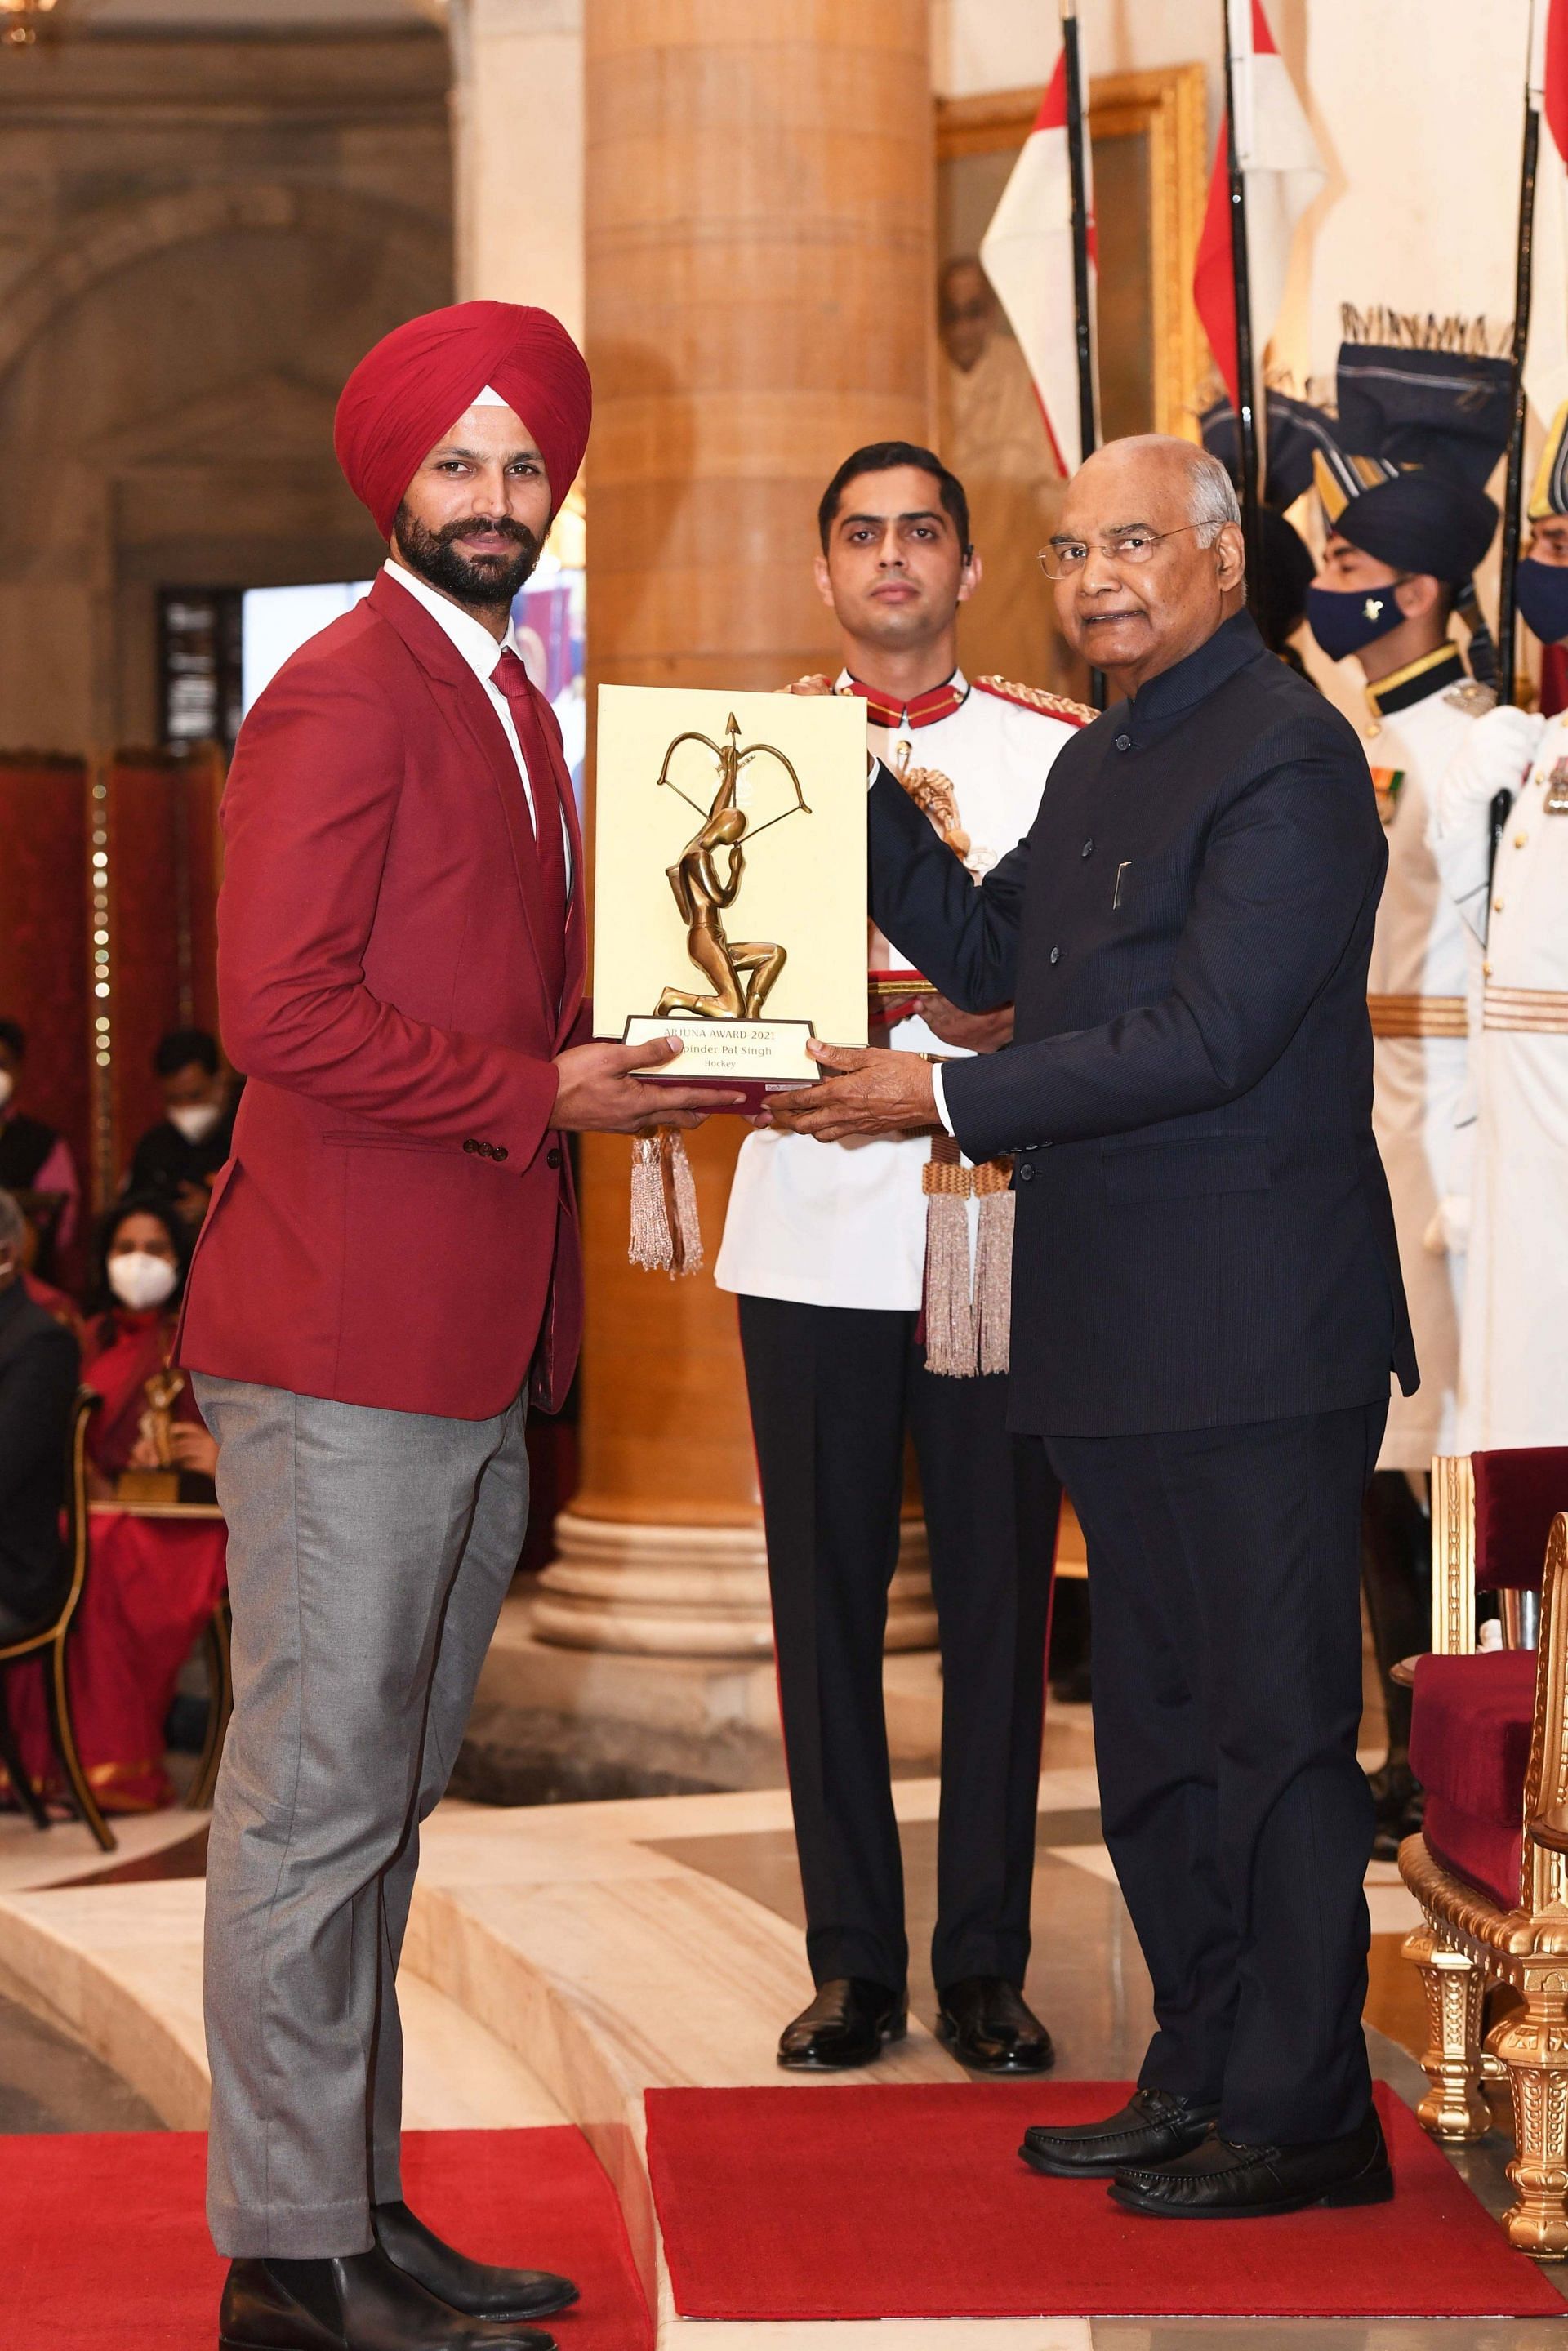 ओलंपिक कांस्य पदक विजेता हॉकी टीम के स्टार खिलाड़ी रुपिंदर पाल सिंह अर्जुन अवॉर्ड के साथ ।